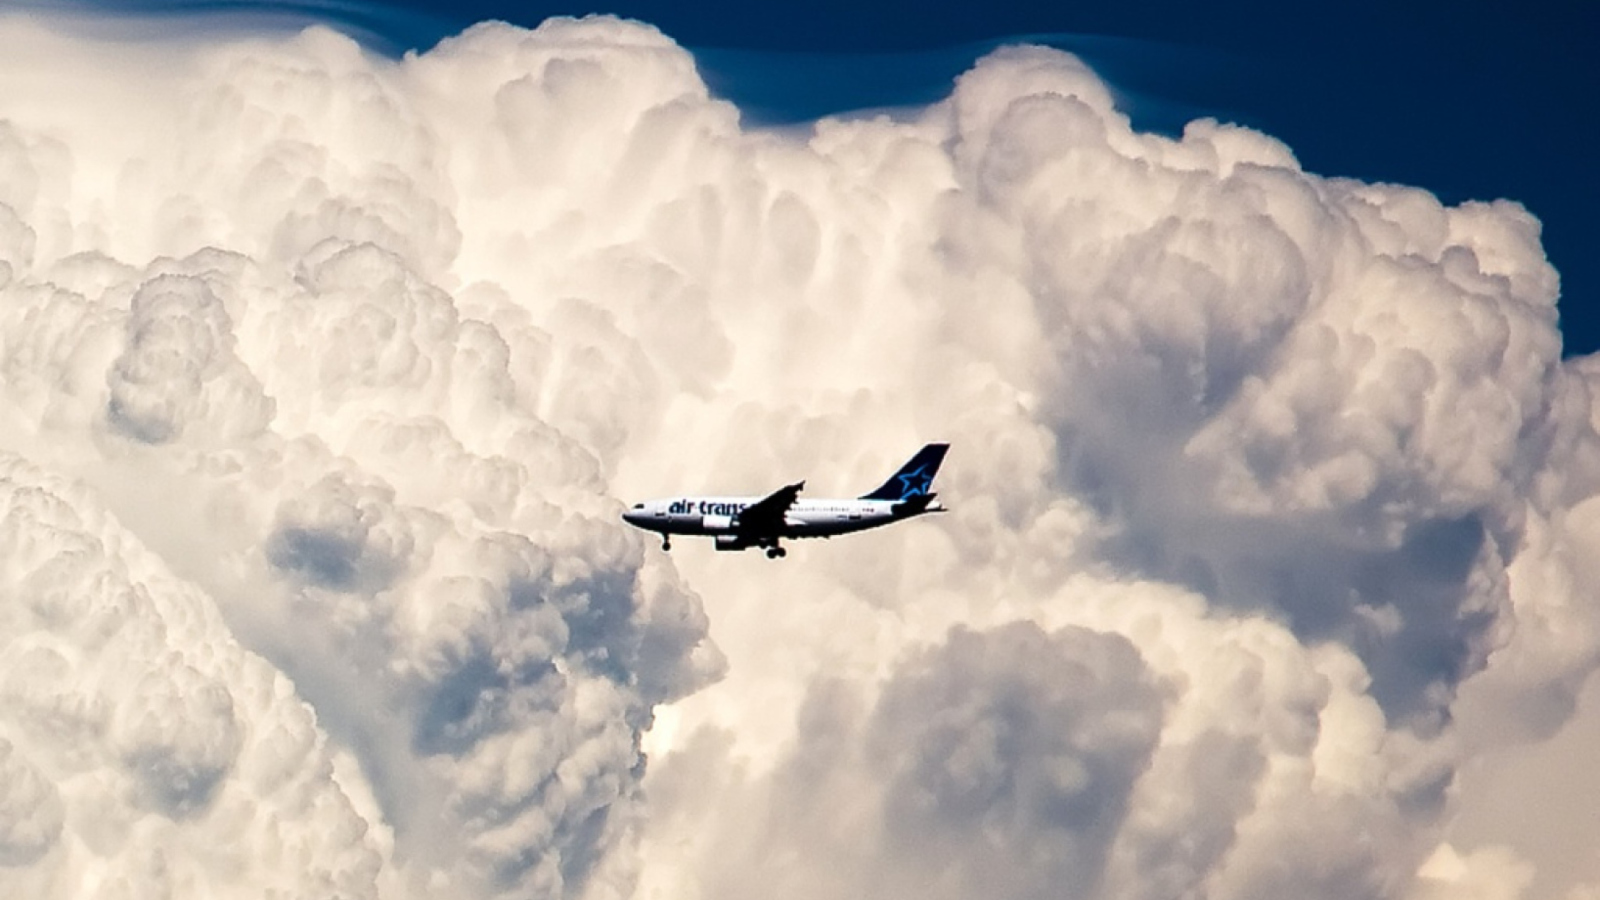 Sfondi Plane In The Clouds 1600x900